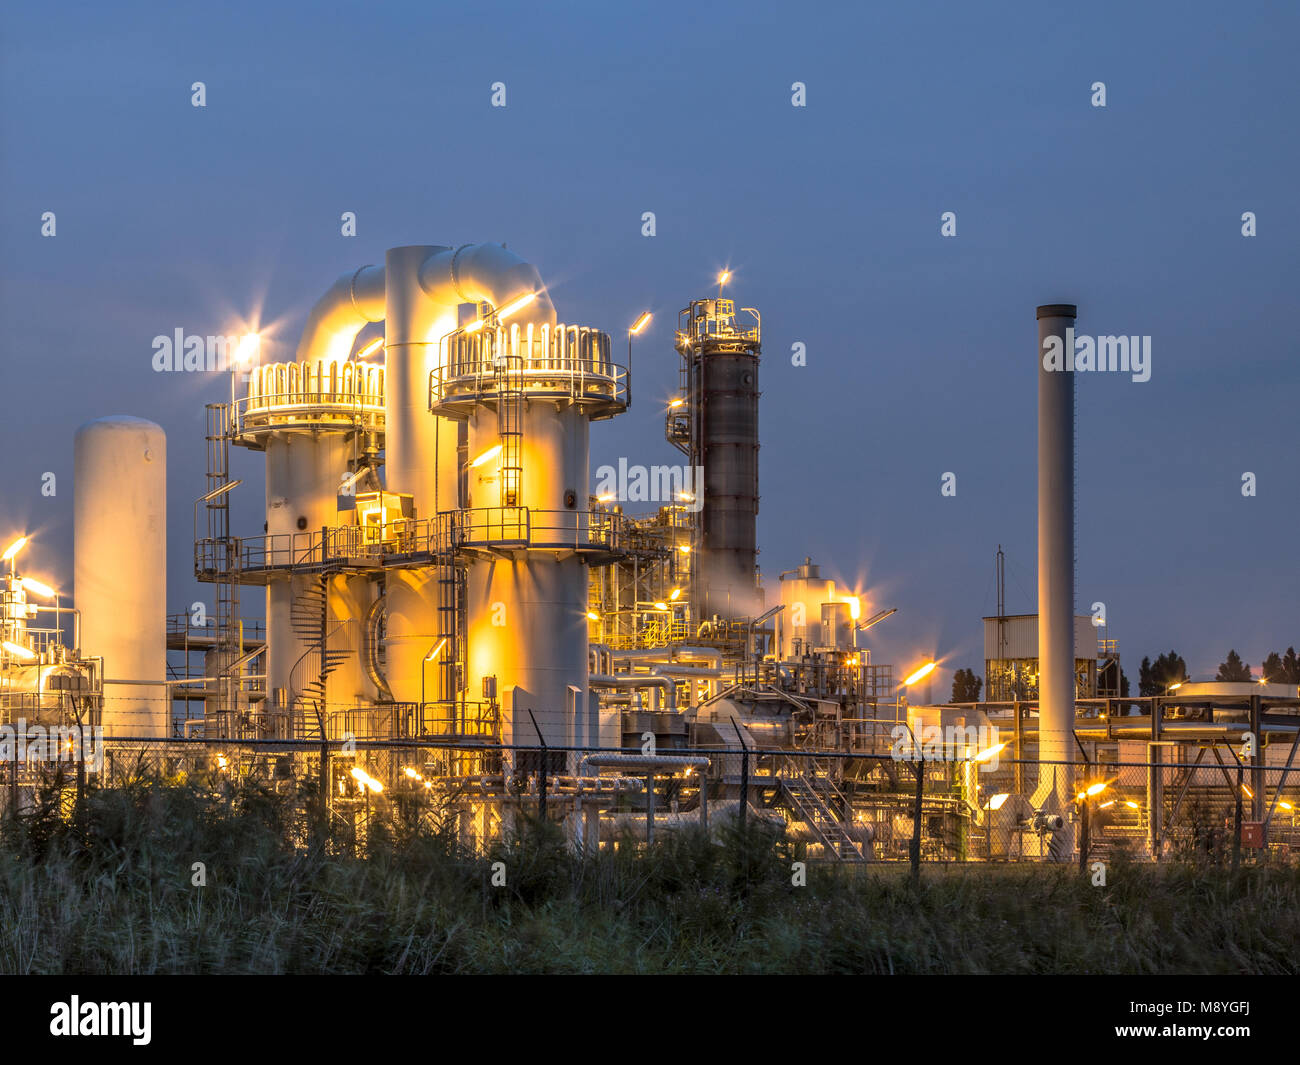 Escena nocturna de los detalles de una planta industrial química pesada con mazework de tubos en penumbra Foto de stock